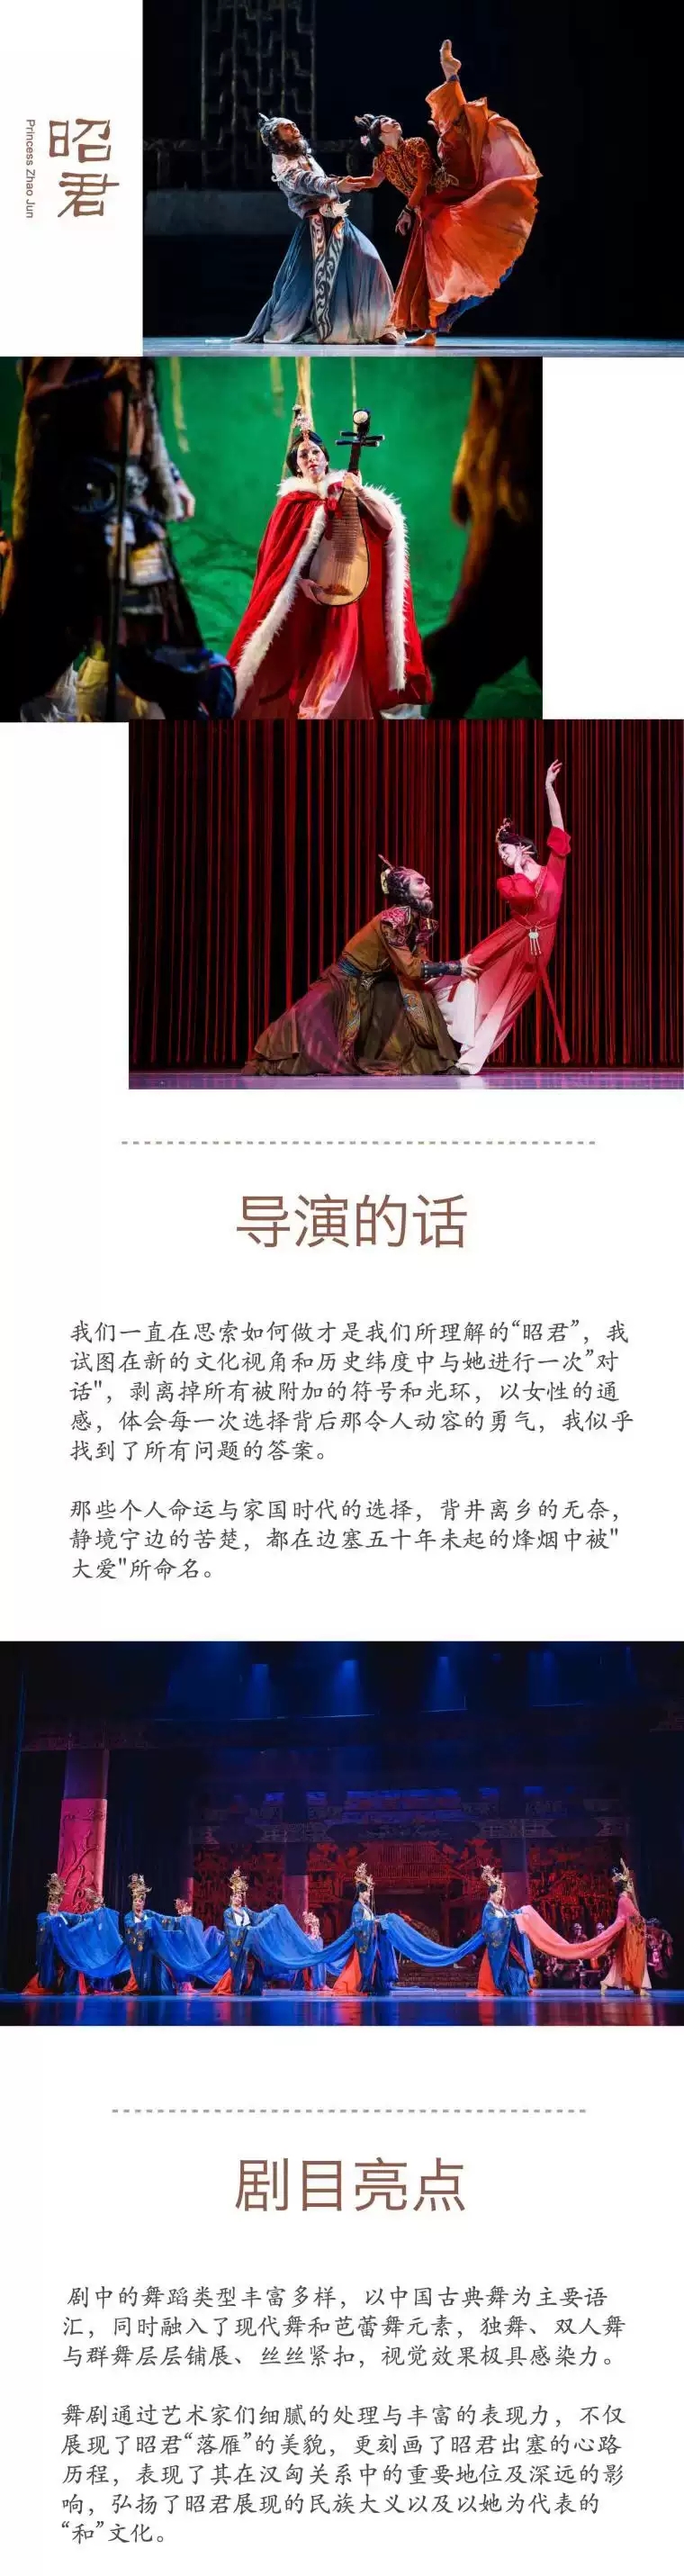 2022“不忘初心”中国歌剧舞剧院舞剧《昭君出塞》-北京站